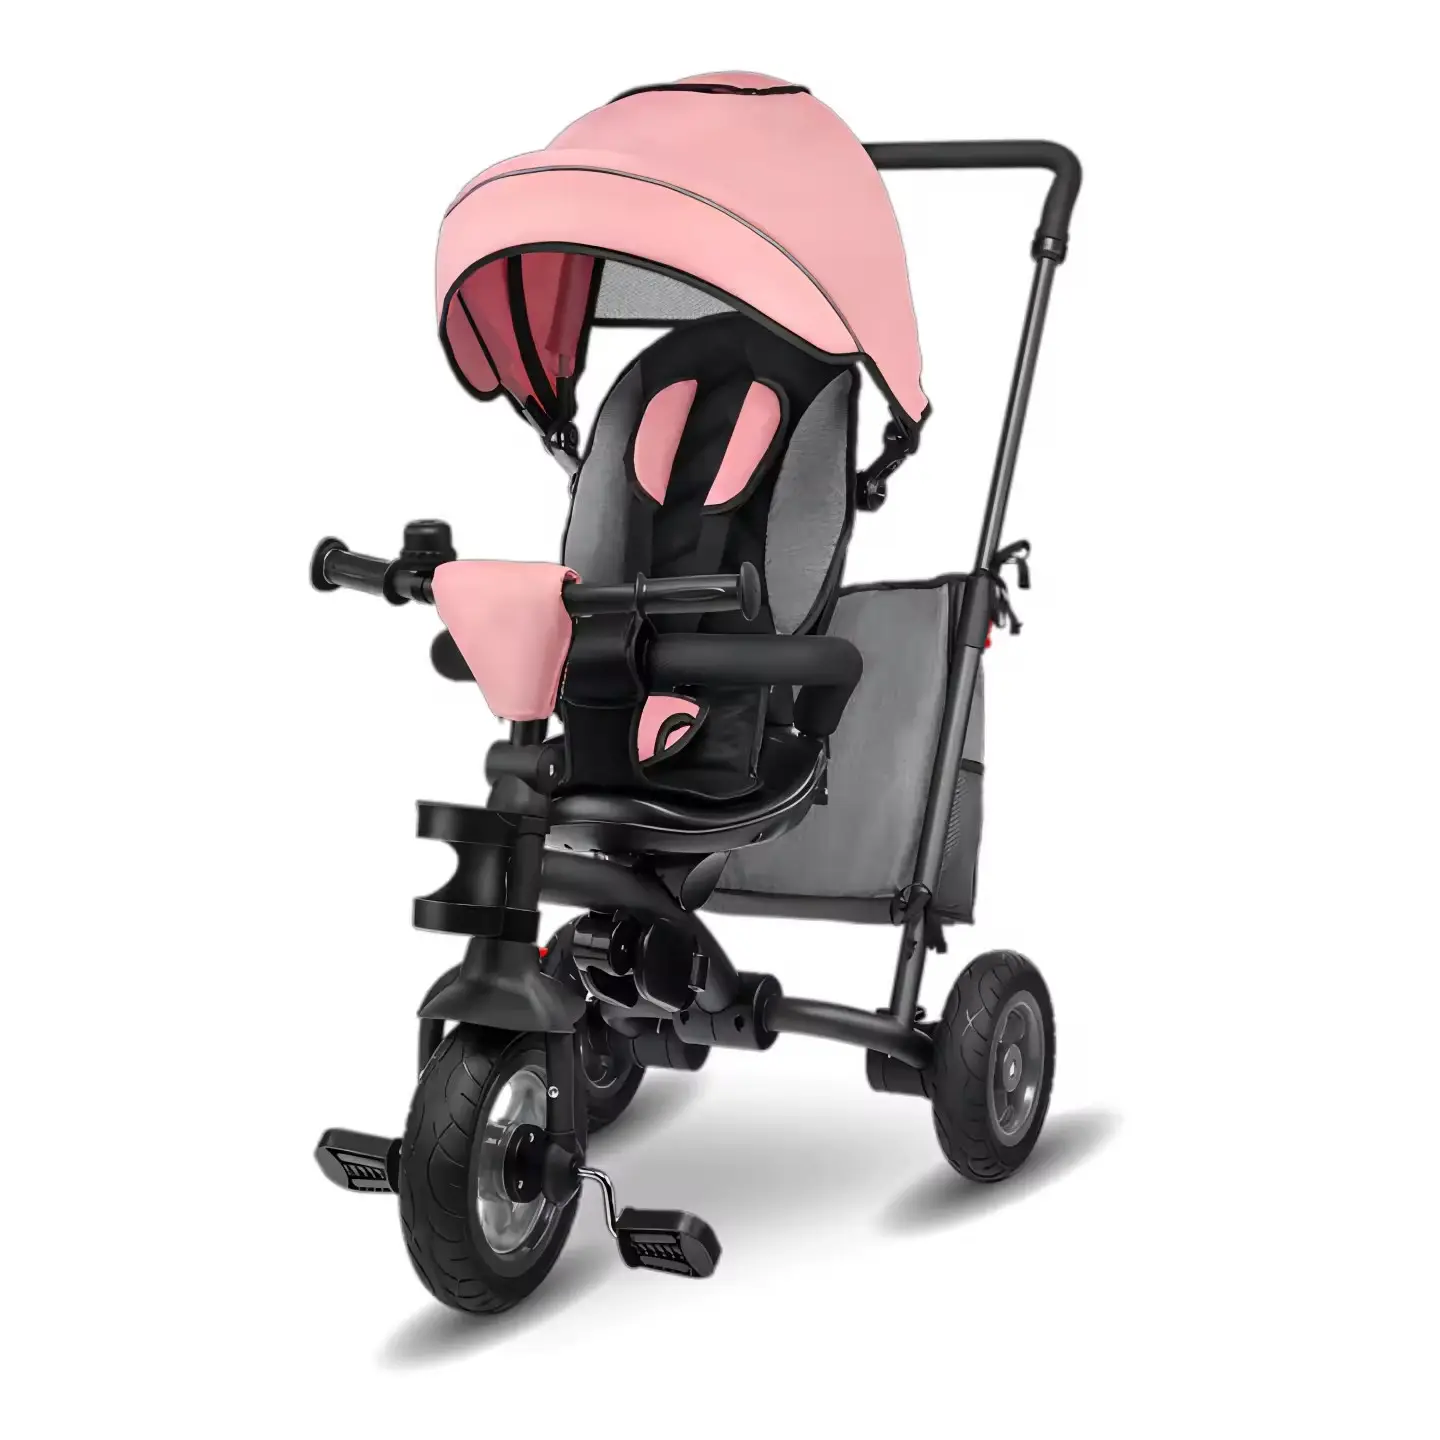 מושב הפיך תלת אופן לתינוק 360 מעלות תינוק דחיפה תלת אופן לילדים תלת אופן עם חופת שמש, ידית הורה